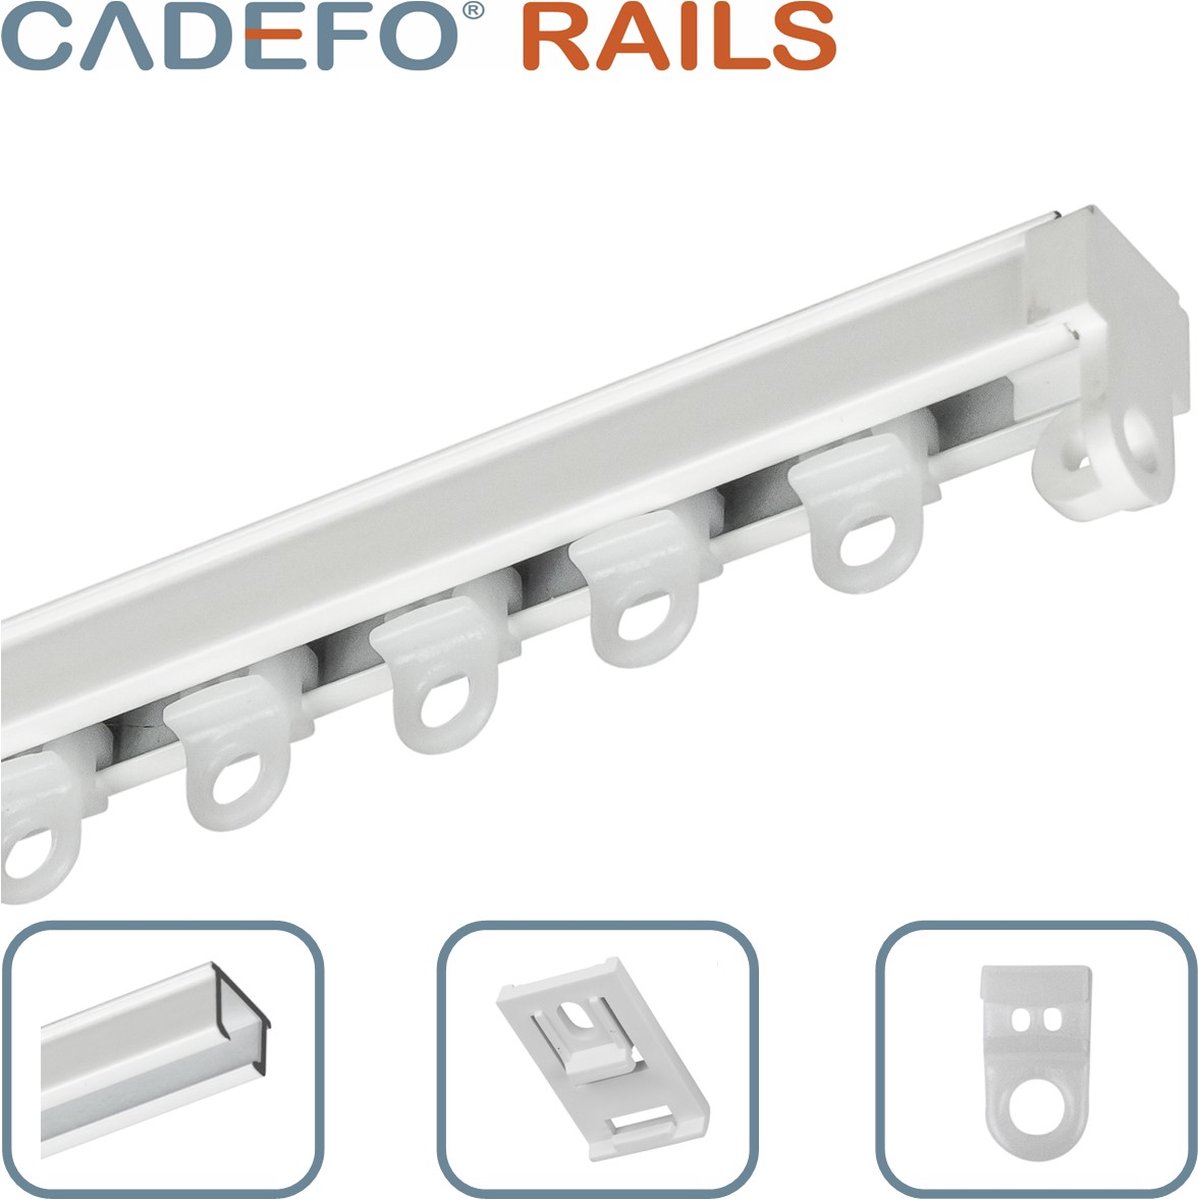 CADEFO RAILS (101 - 150 cm) Gordijnrails - Compleet op maat! - UIT 1 STUK - Leverbaar tot 6 meter - Plafondbevestiging - Lengte 147 cm